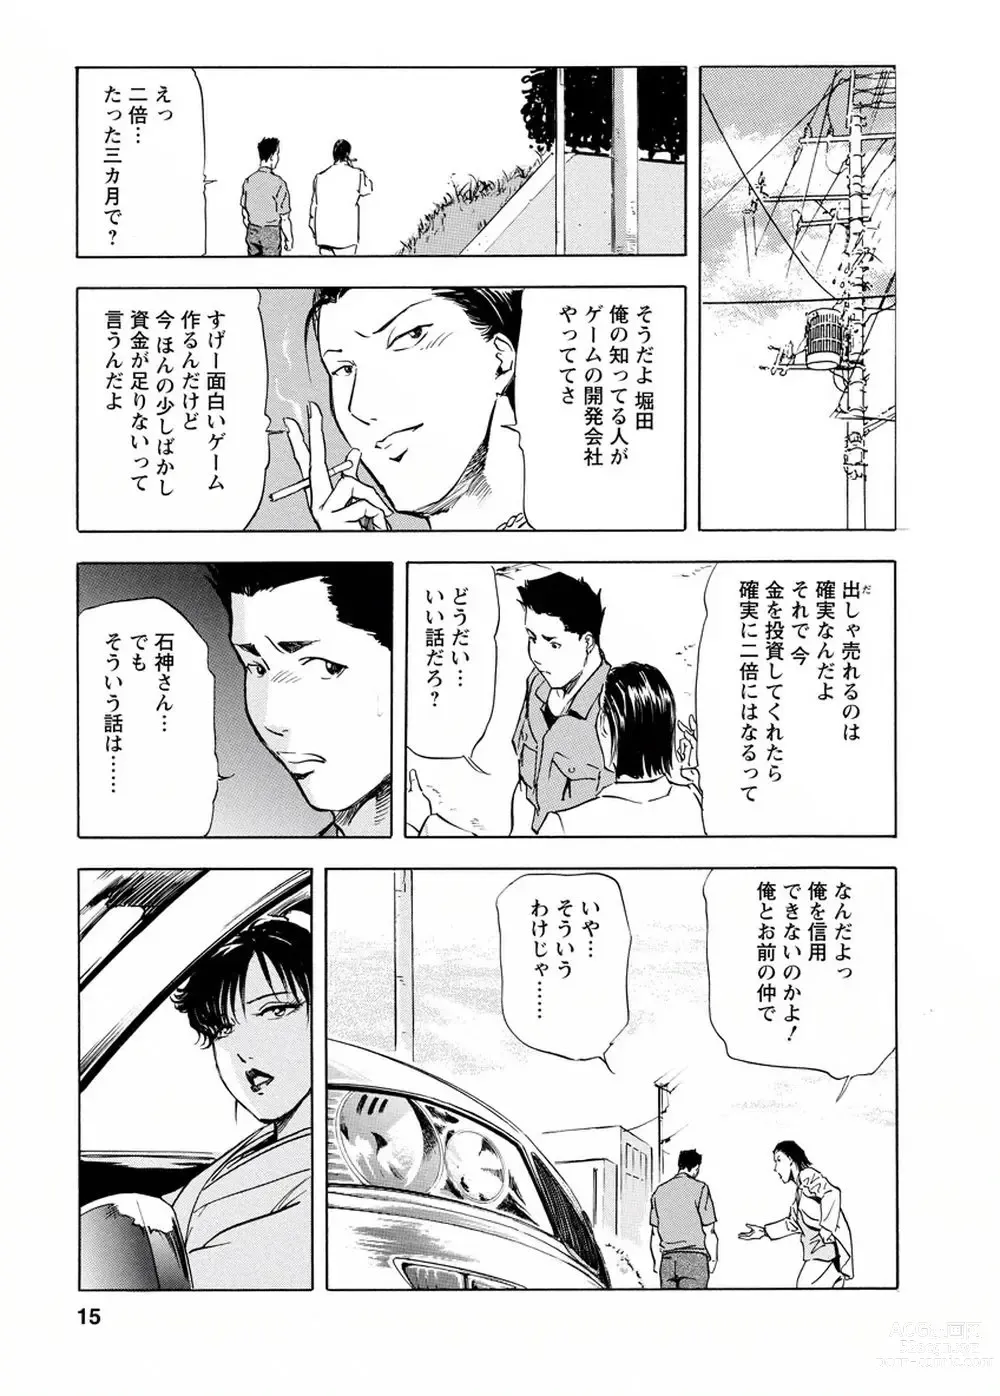 Page 14 of manga Tsuyako no Yu Vol.4